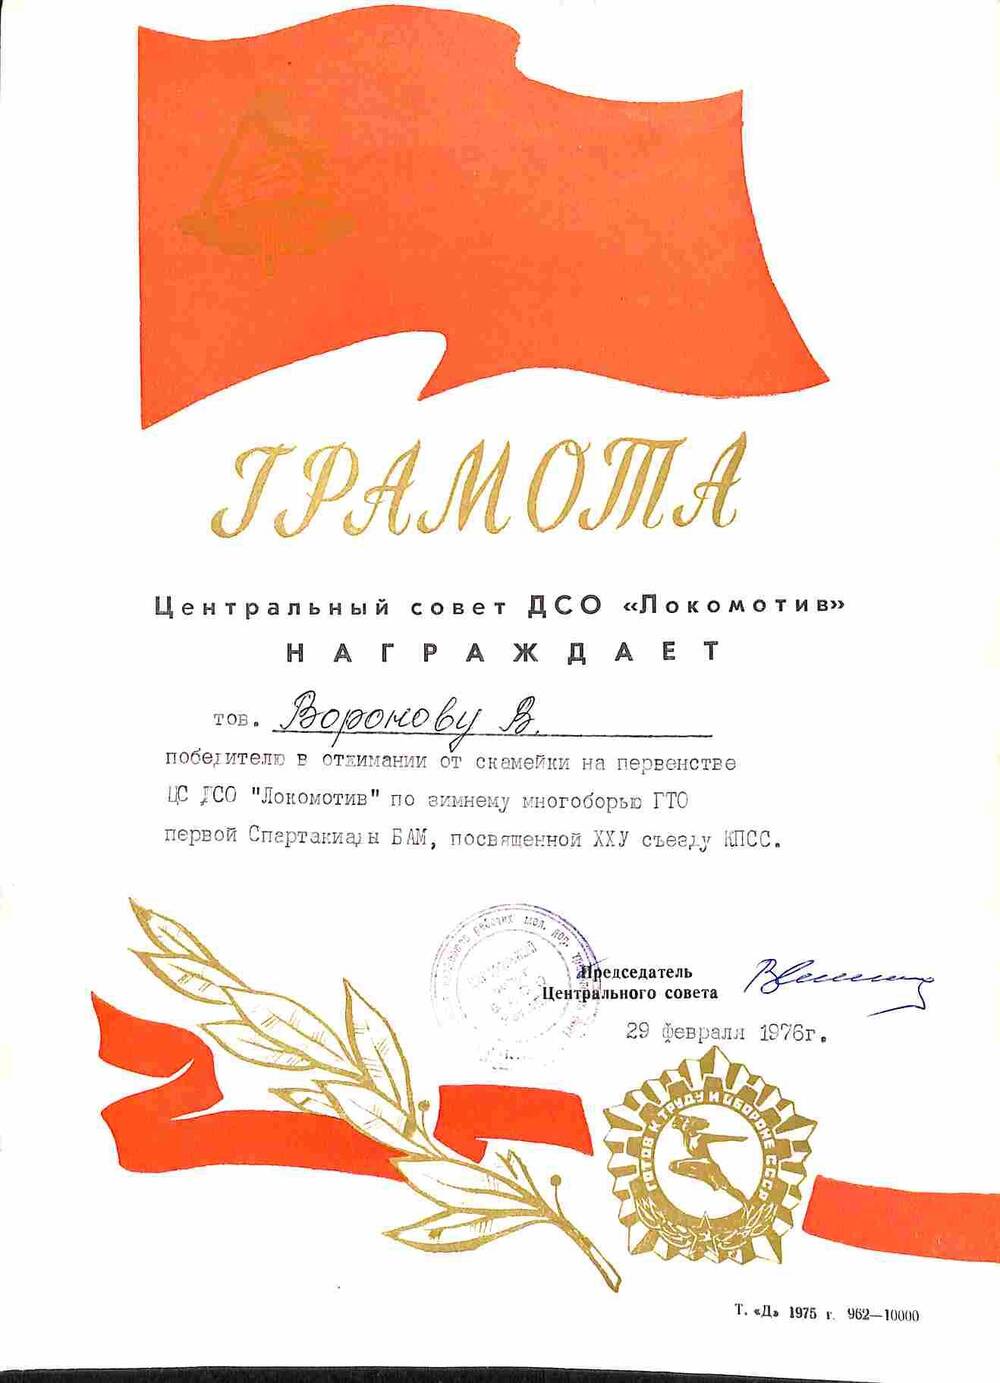 Грамота Вороновой В., победителю отжимания от скамейки. 1976 год